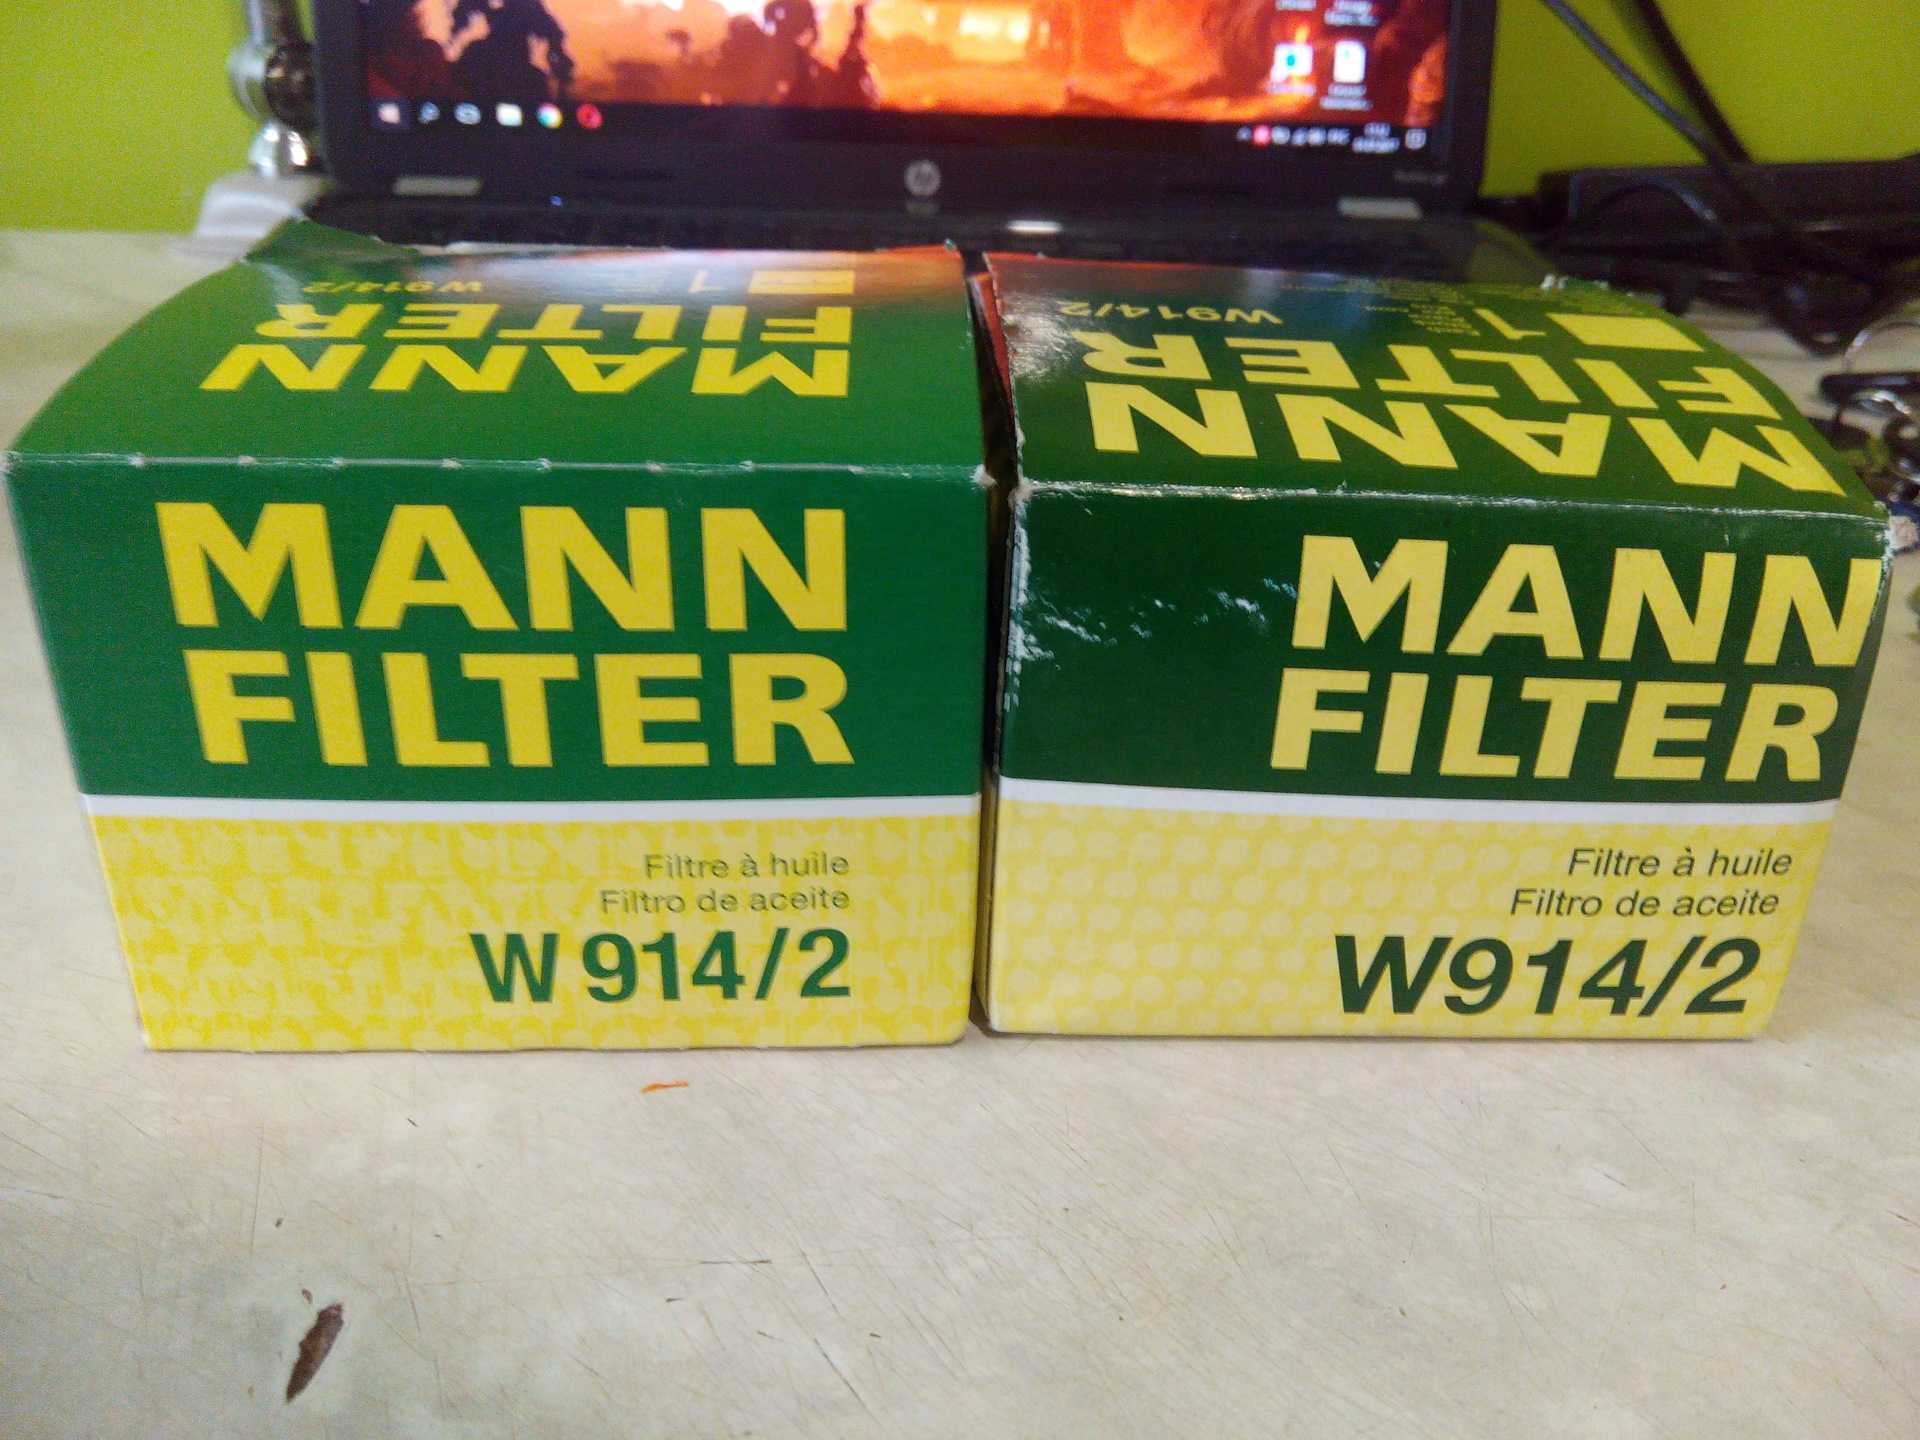 Как отличить фильтр манн